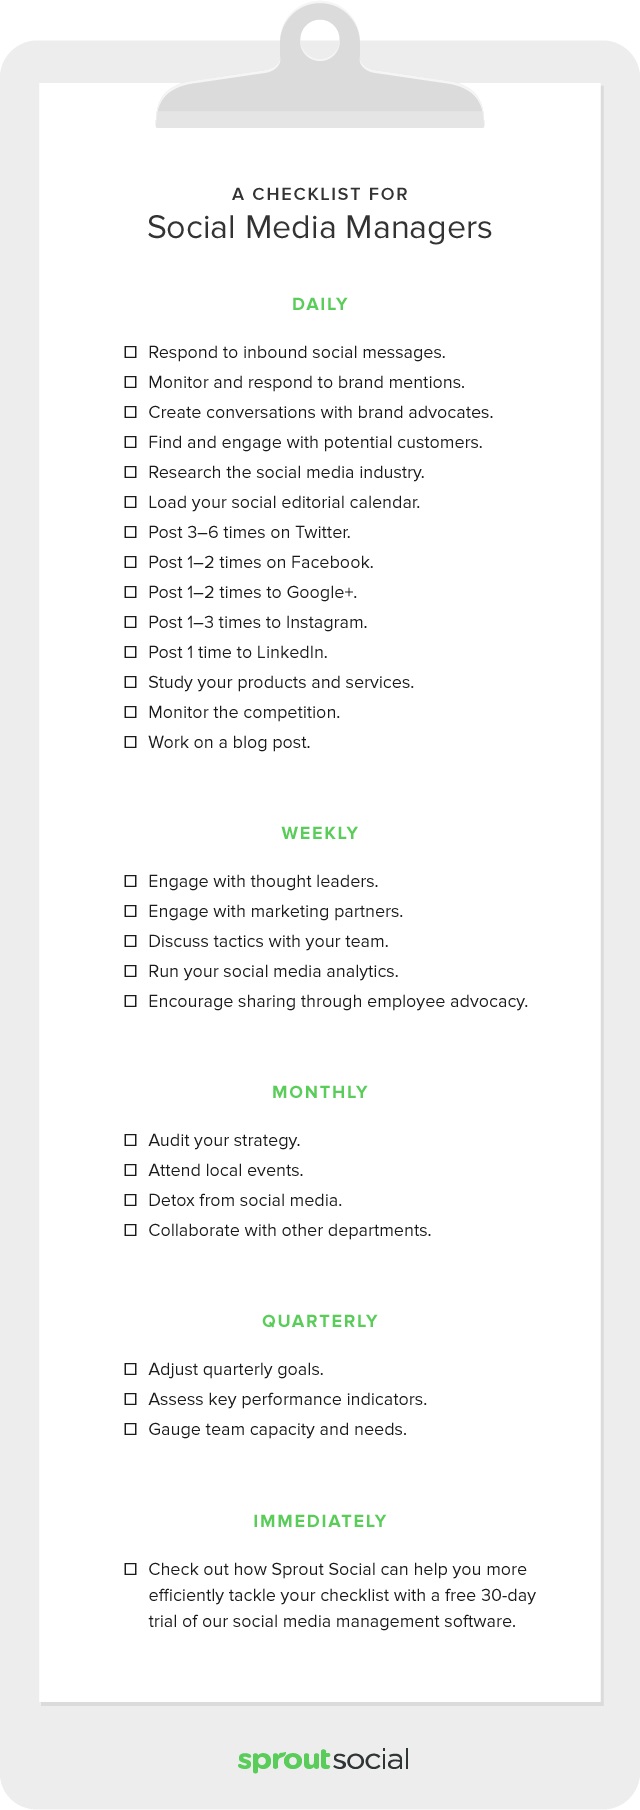 The 25 Step Social Media Checklist